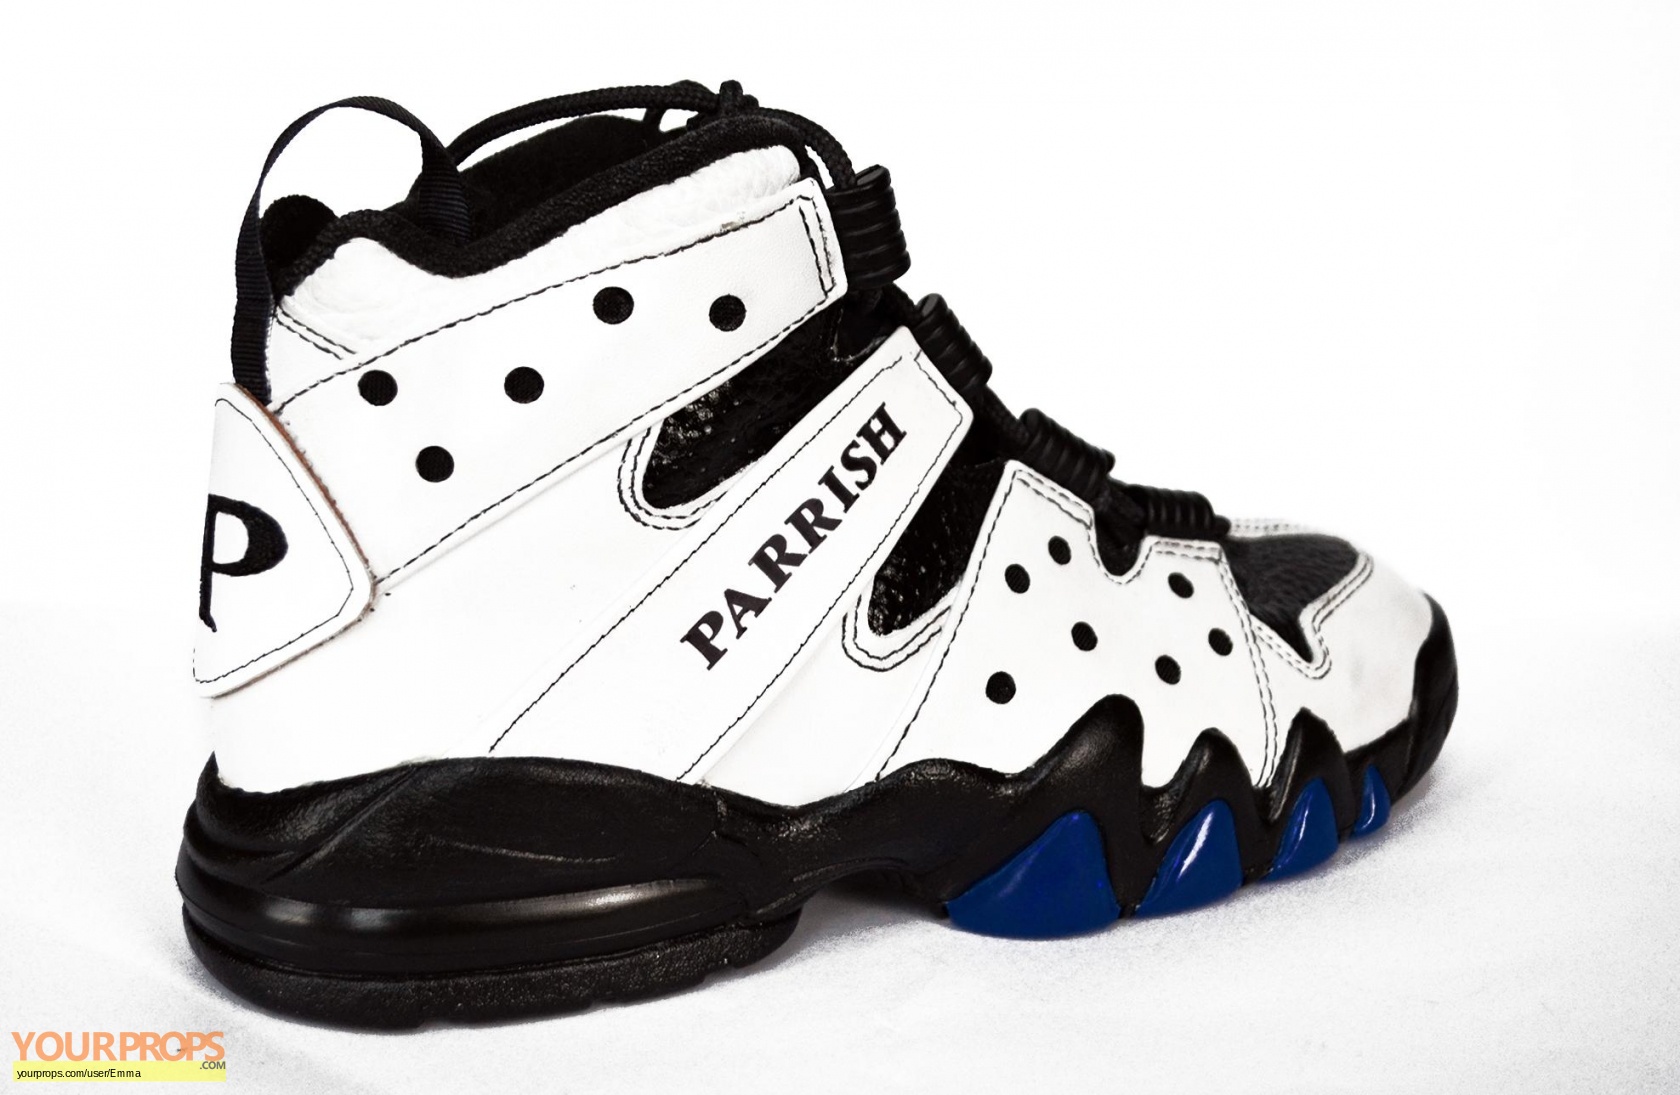 Introducir 53+ imagen jumanji parrish shoes